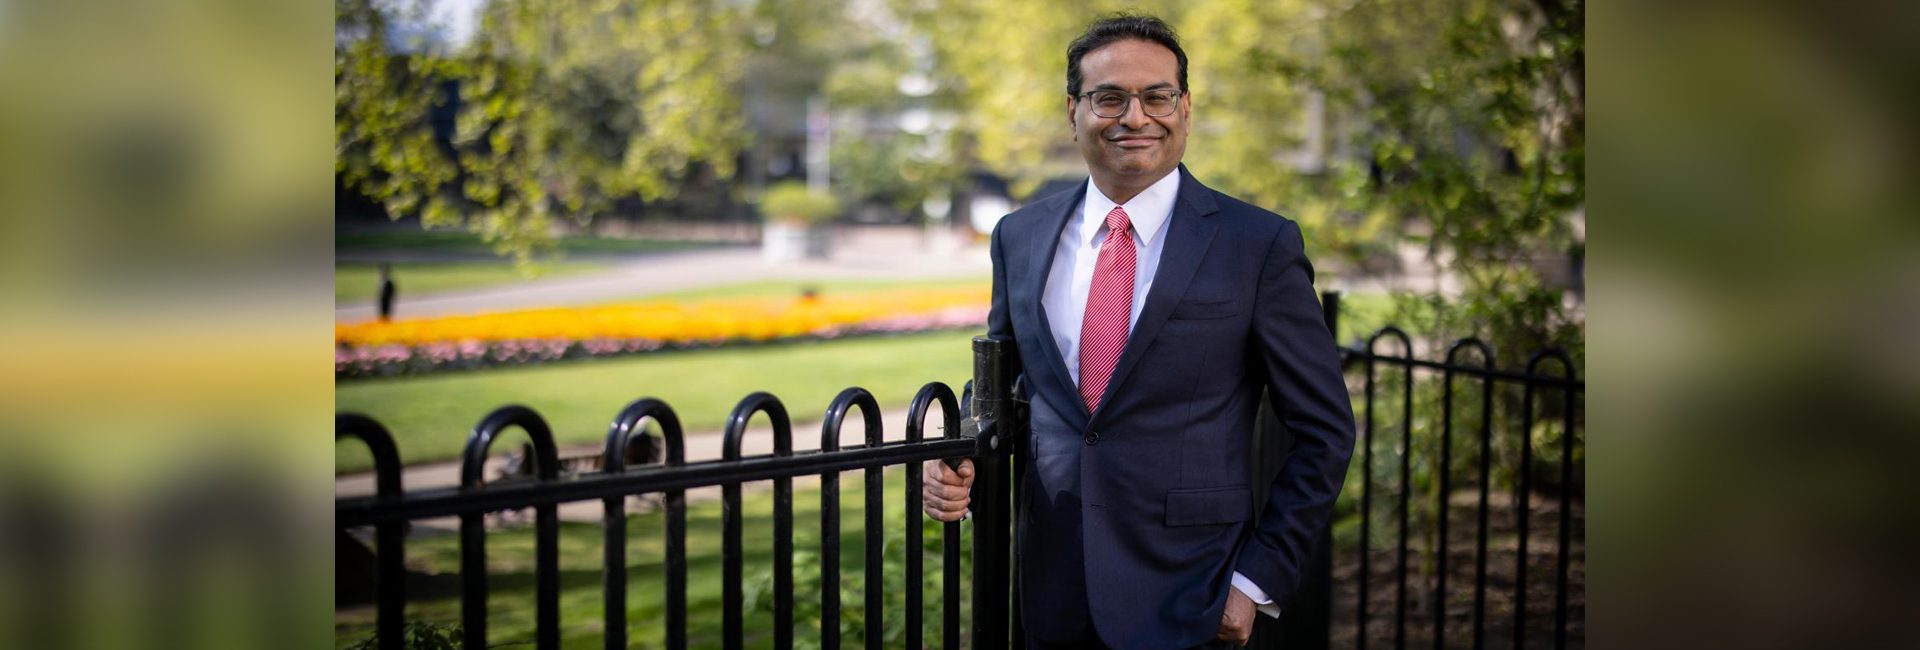 Outro CEO indiano no bloco: Laxman Narasimhan, nascido em Pune, para chefiar a Starbucks